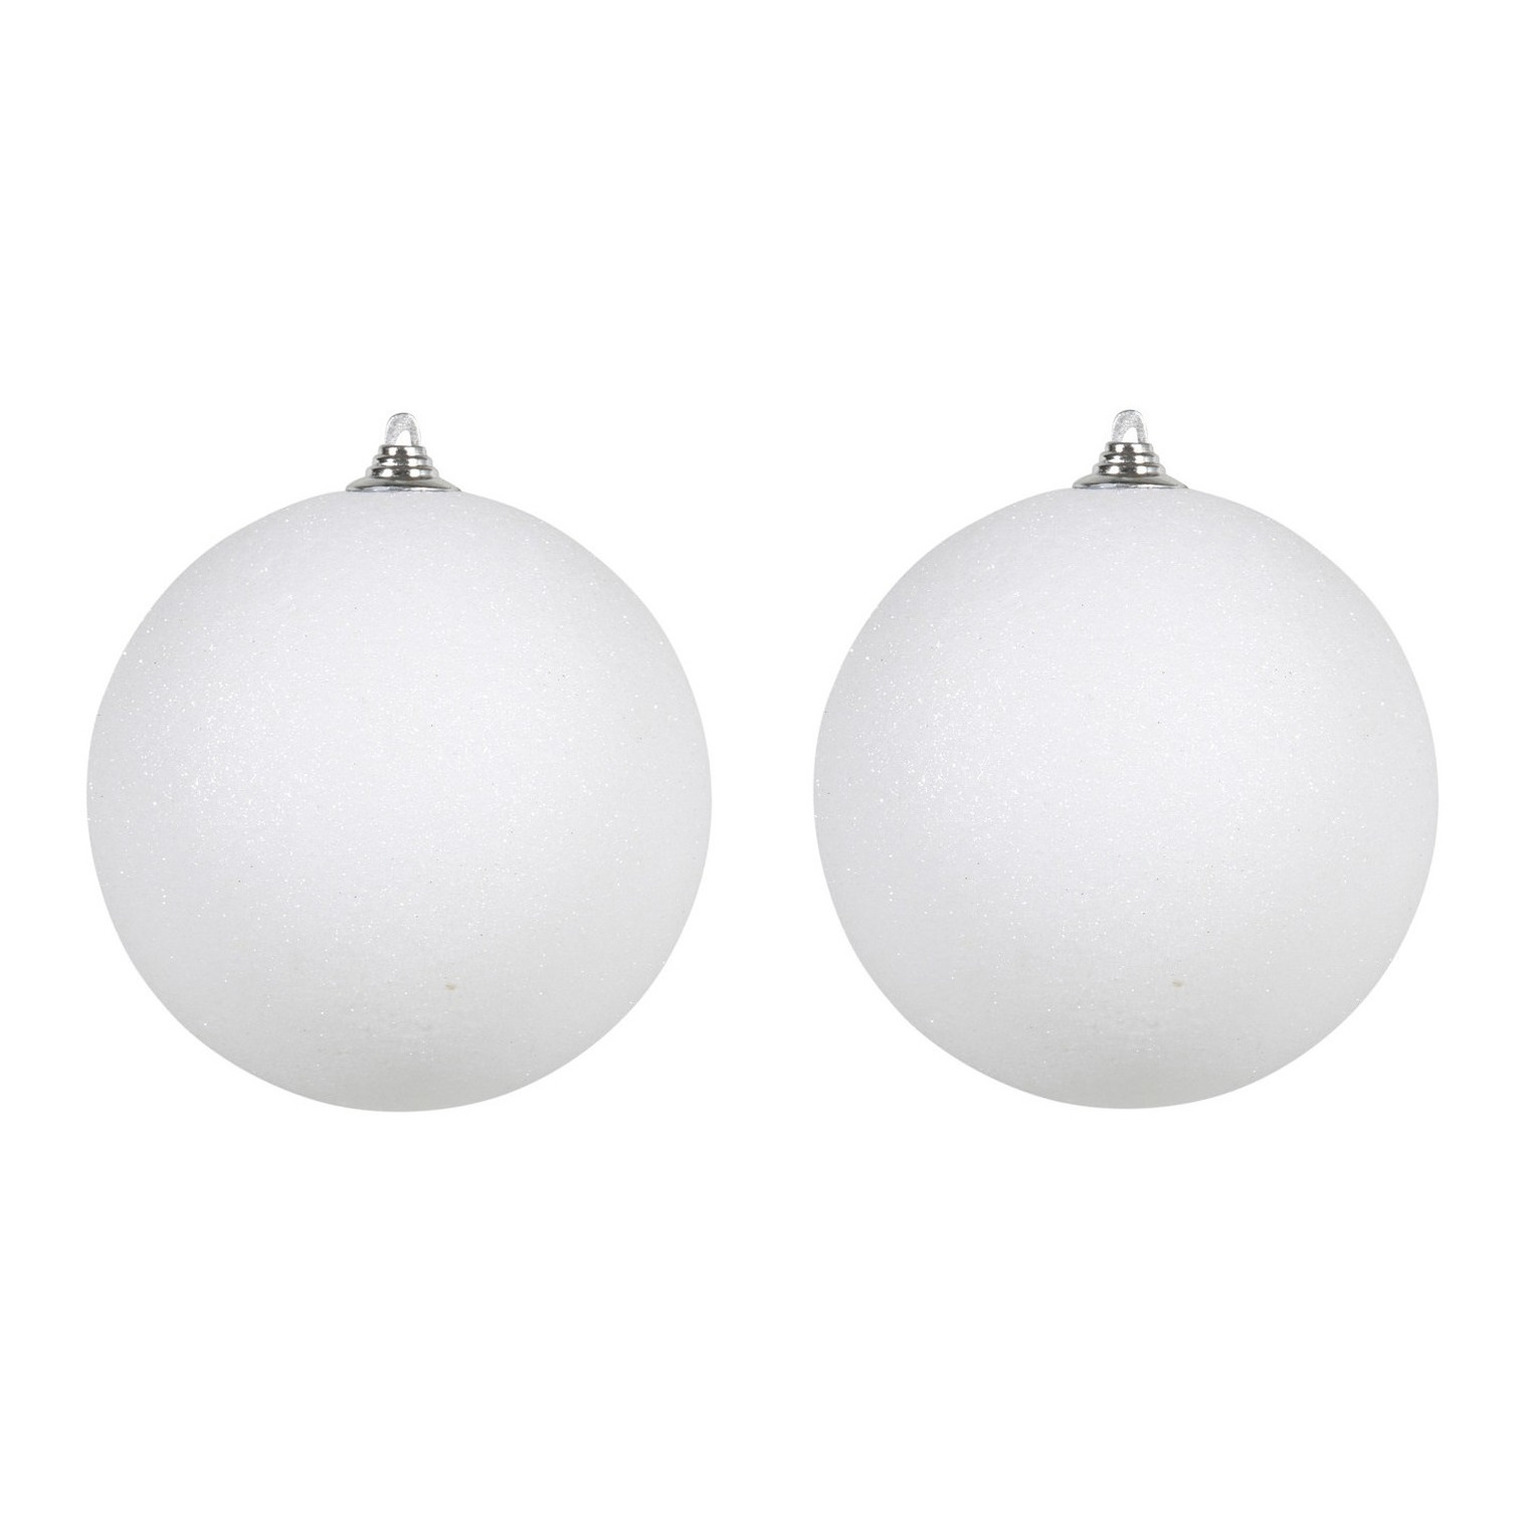 3x Witte grote kerstballen met glitter kunststof 18 cm